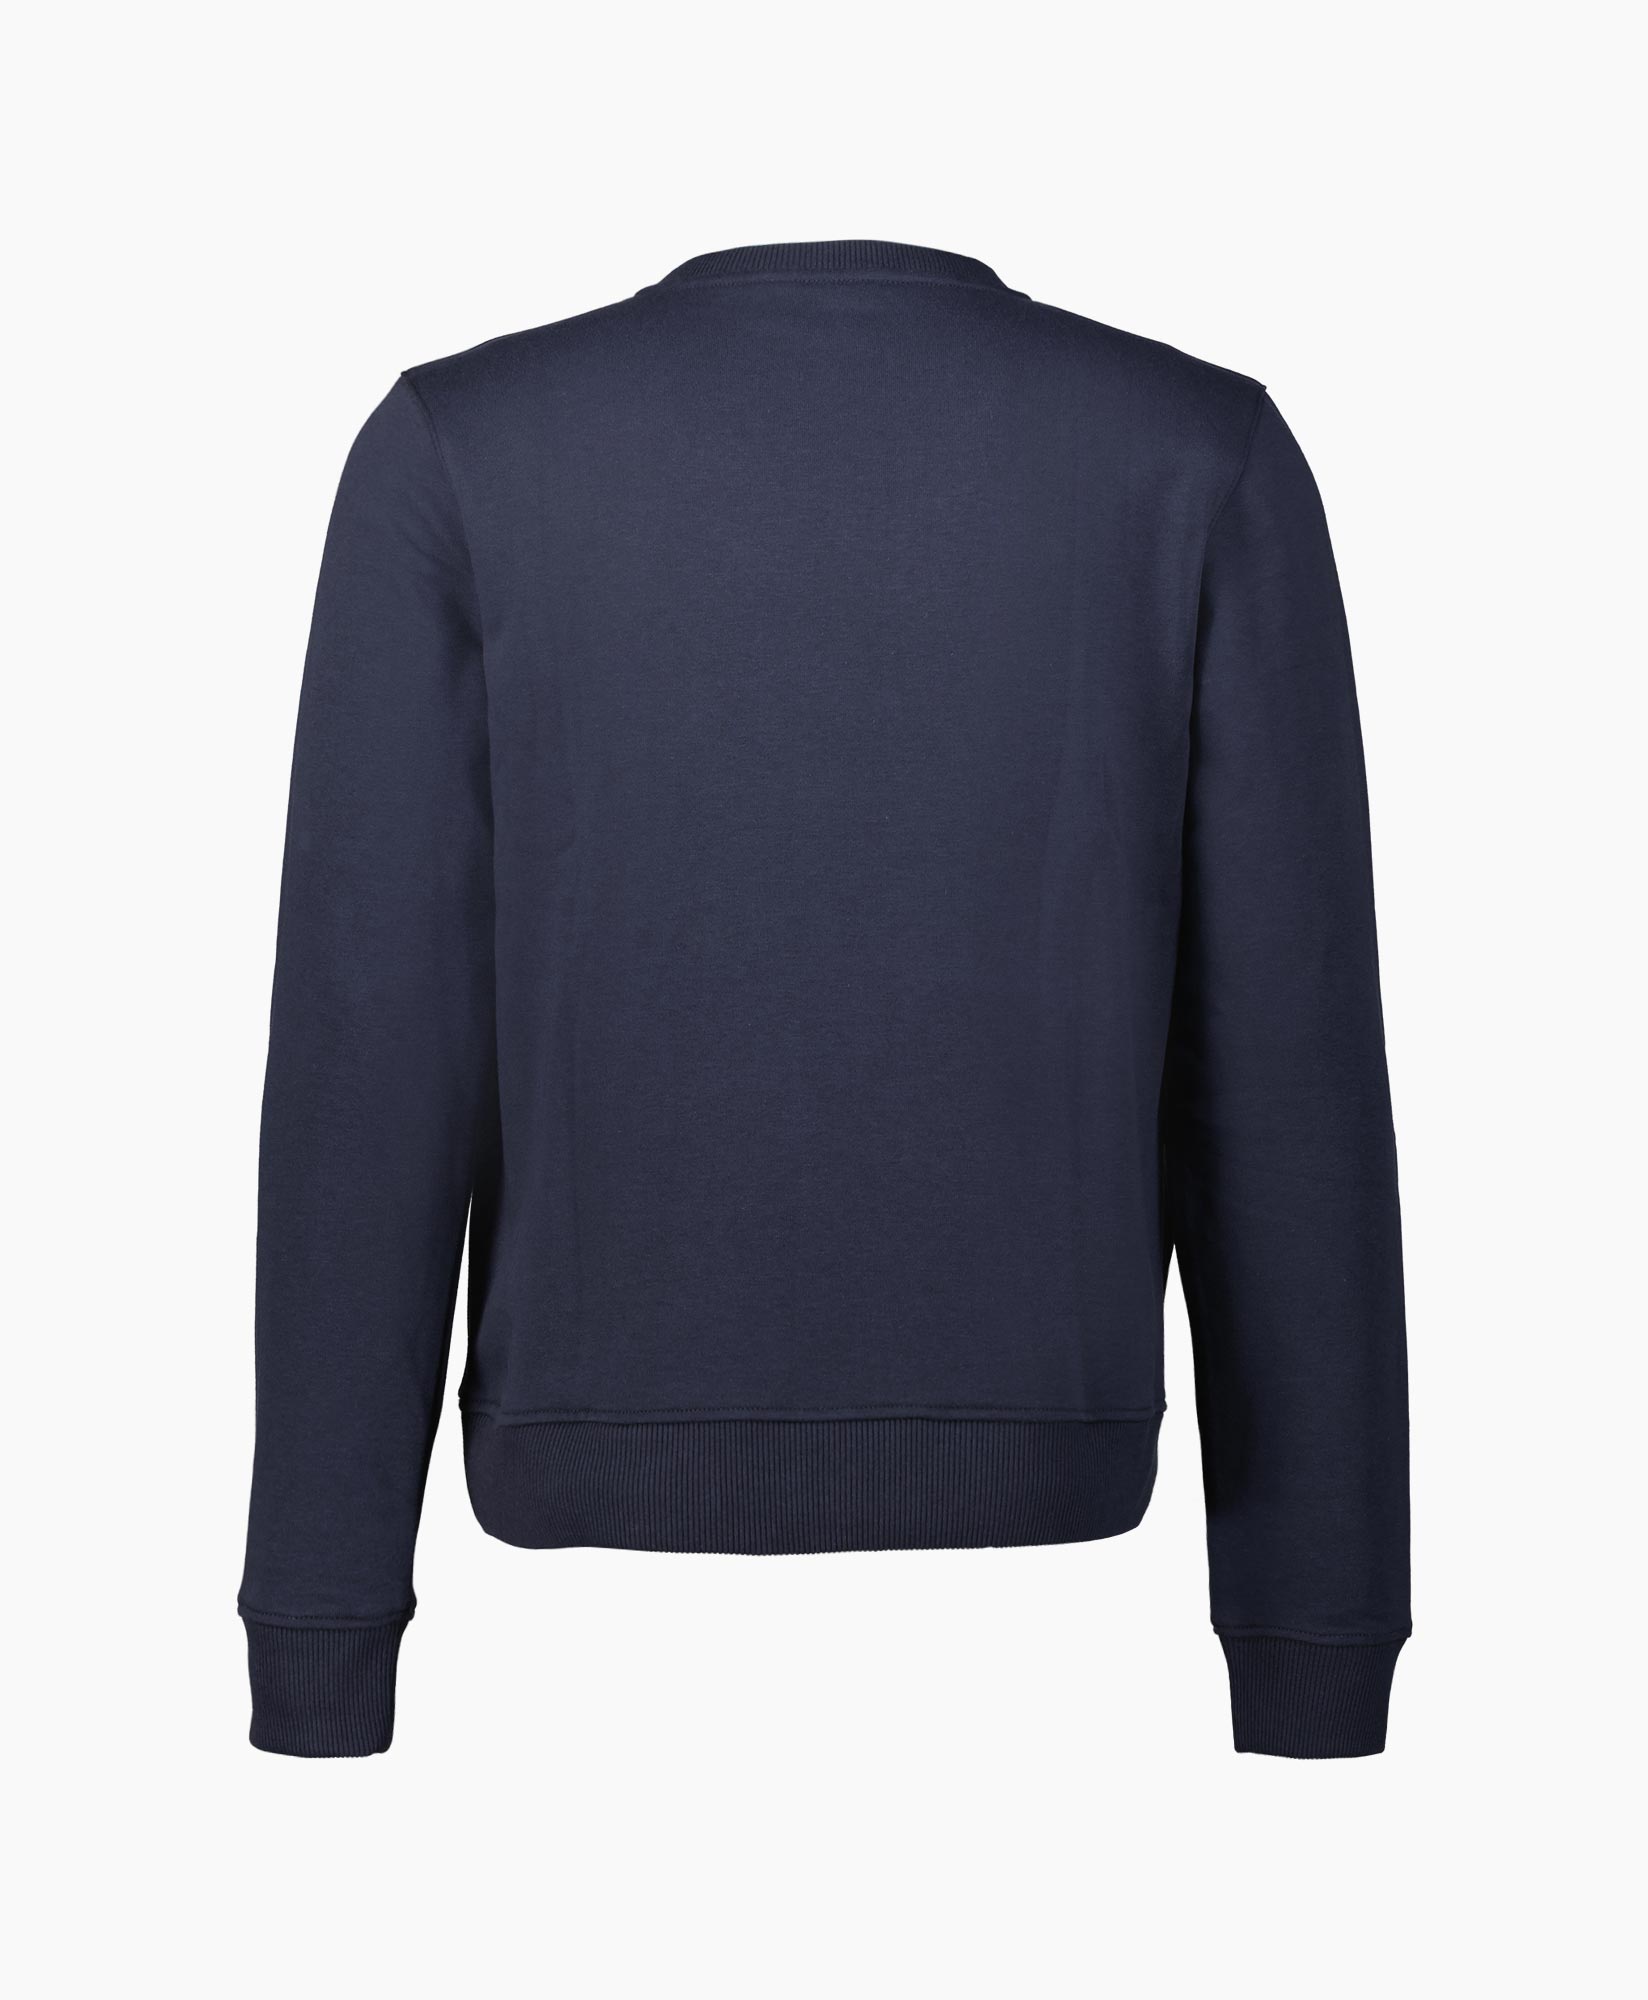 Sweater K8122pw Blauw